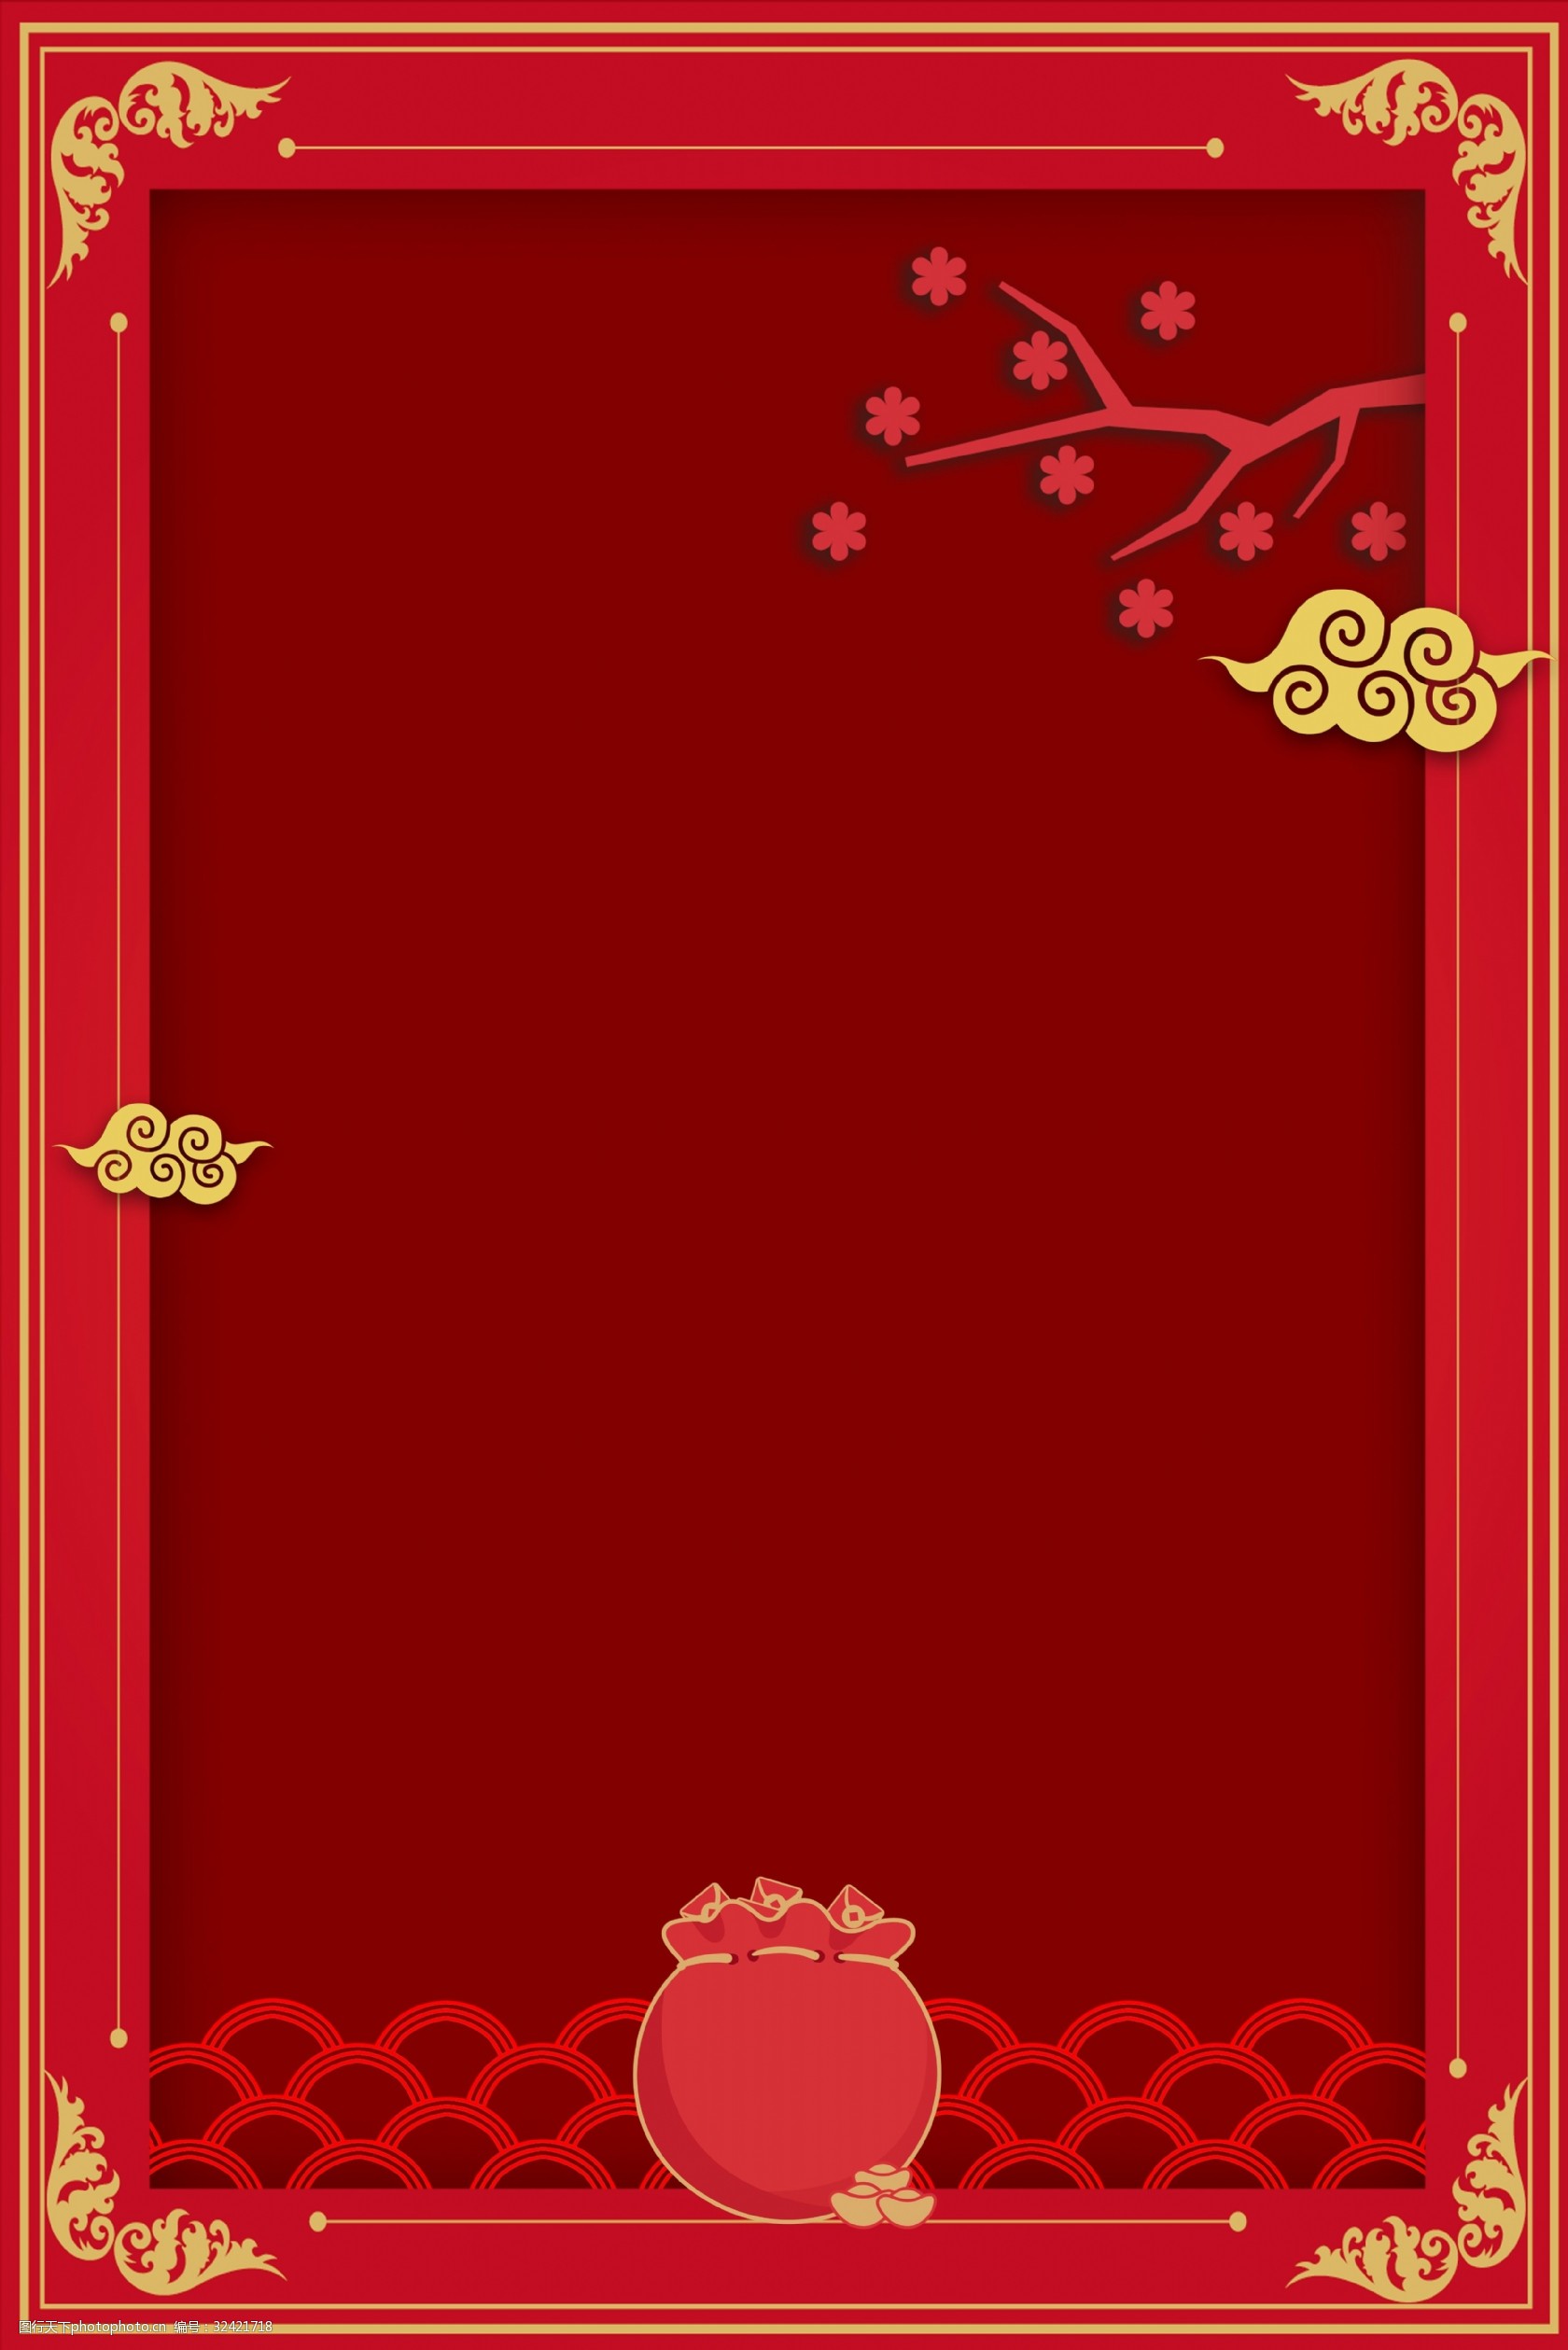 关键词:传统中式边框底纹背景海报 中式 中国风 红色 底纹 边框 背景